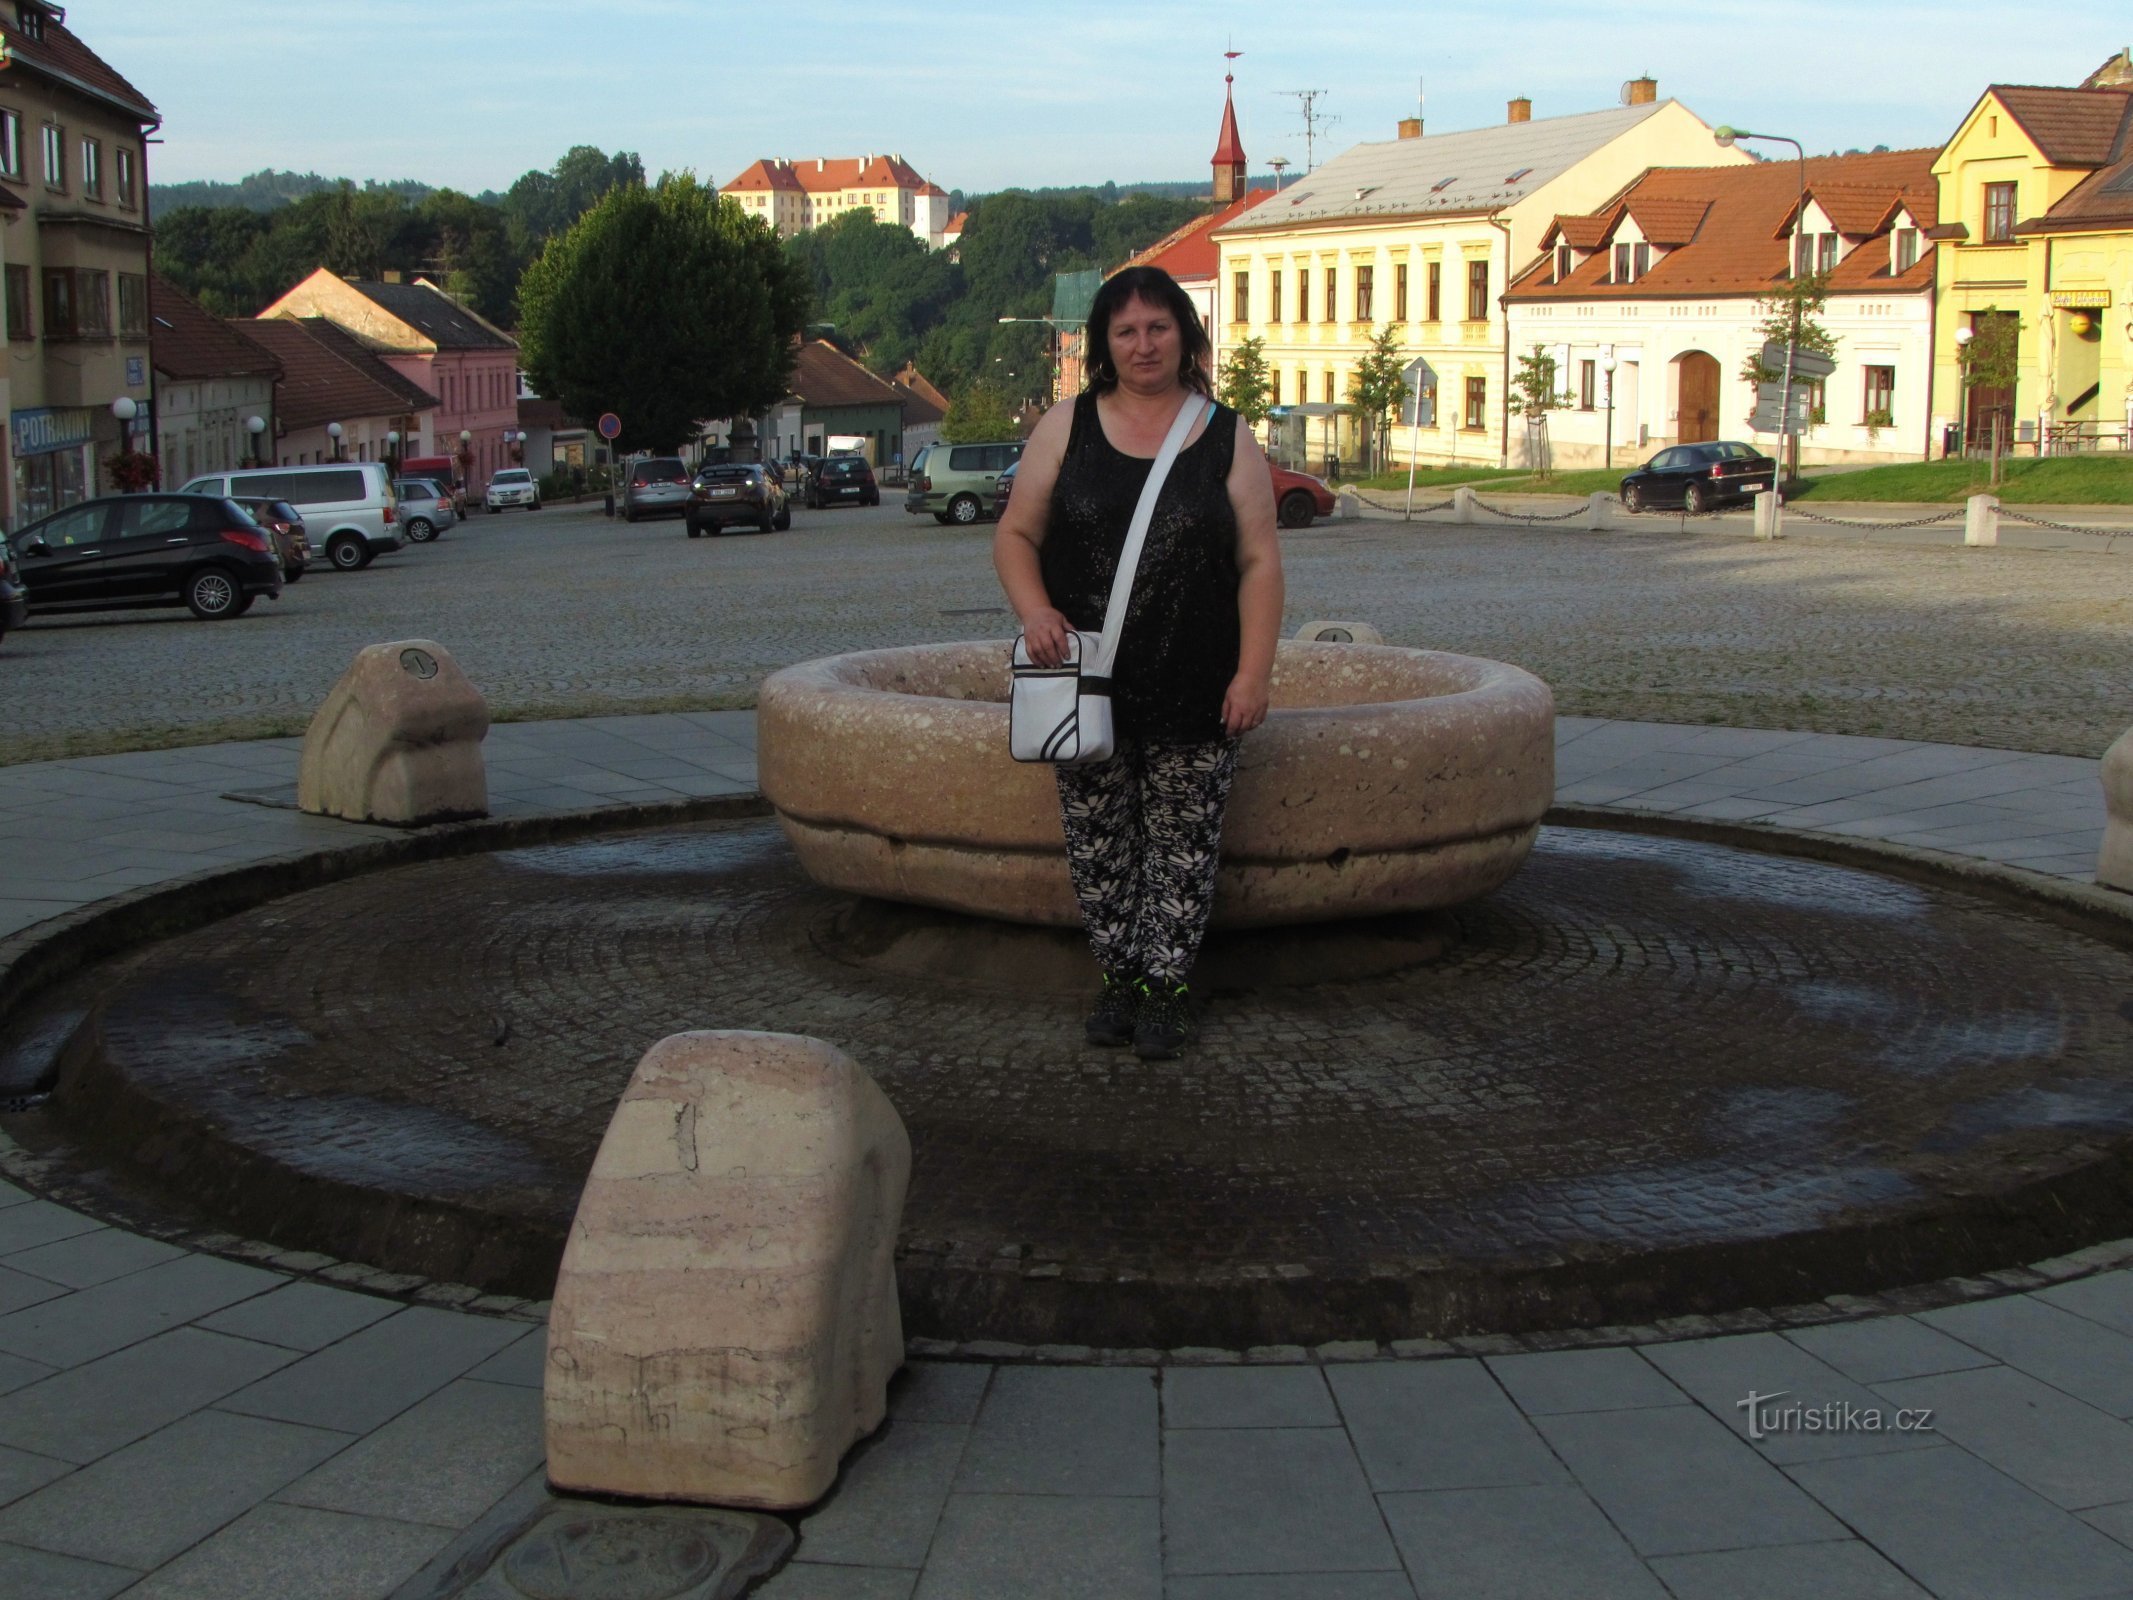 Uma fonte não convencional na Praça King George em Kunštát